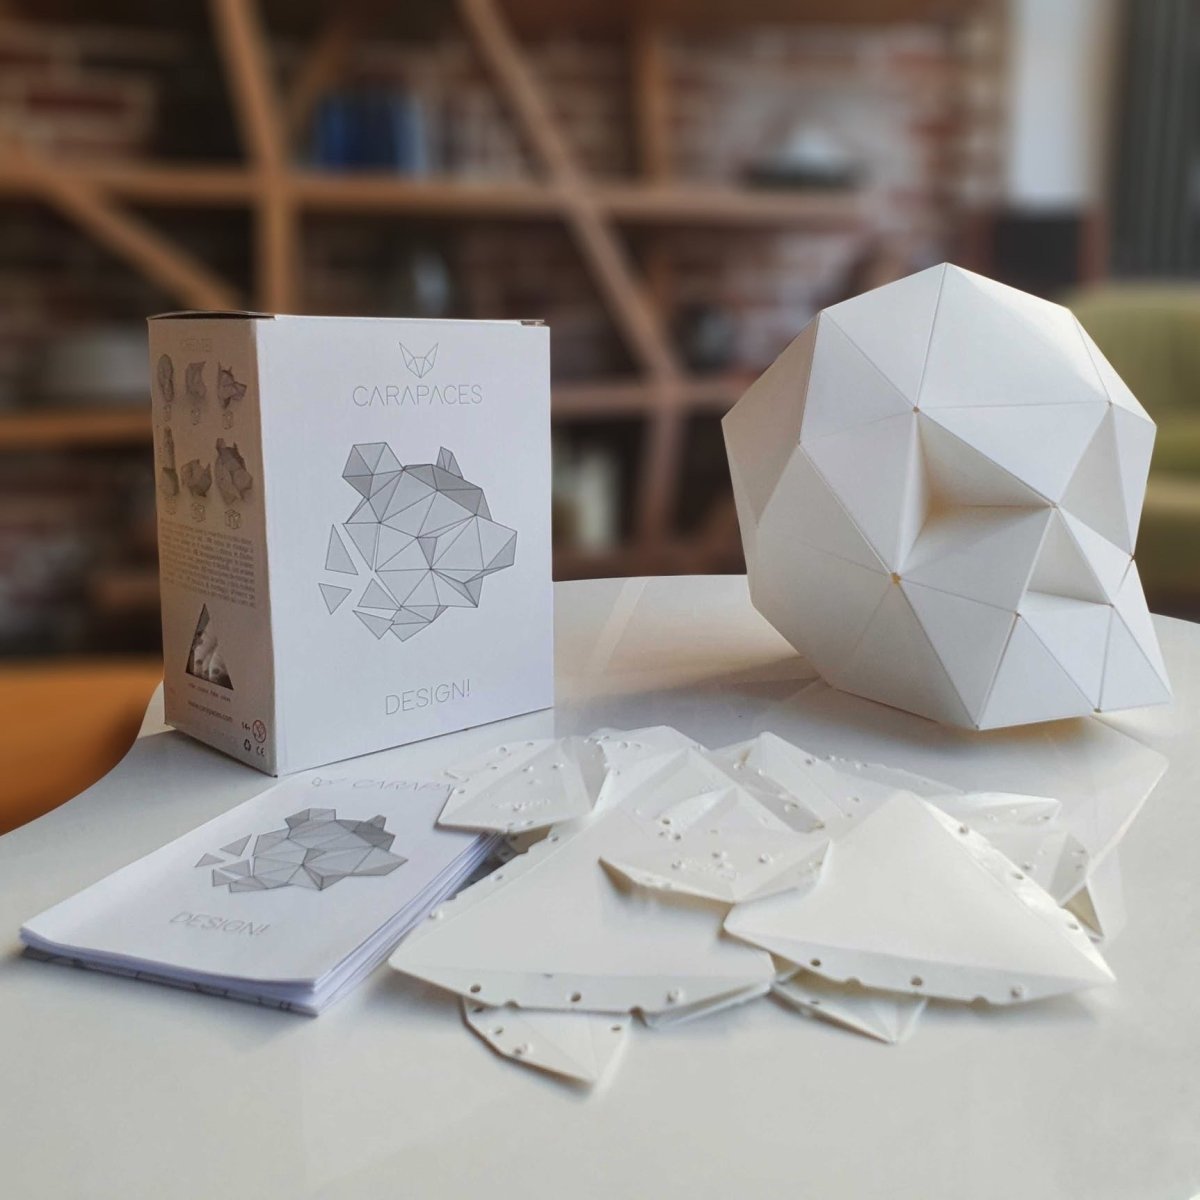 Cómo hacer una caja regalo de origami que se abre - Manualidades Play